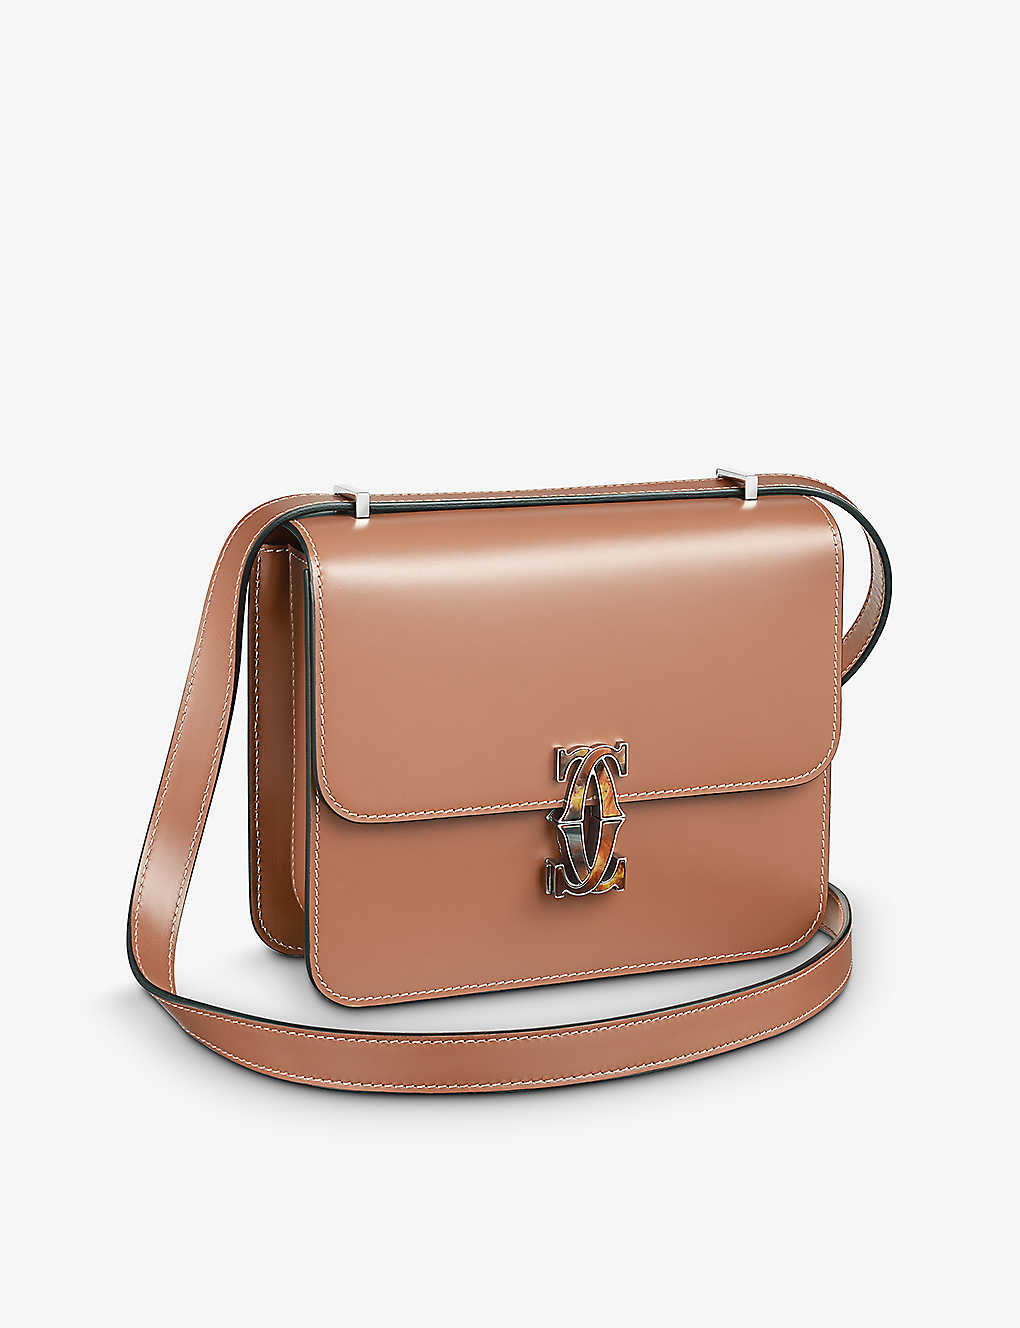 Cartier Womens Tan Double C De Mini Leather Shoulder Bag